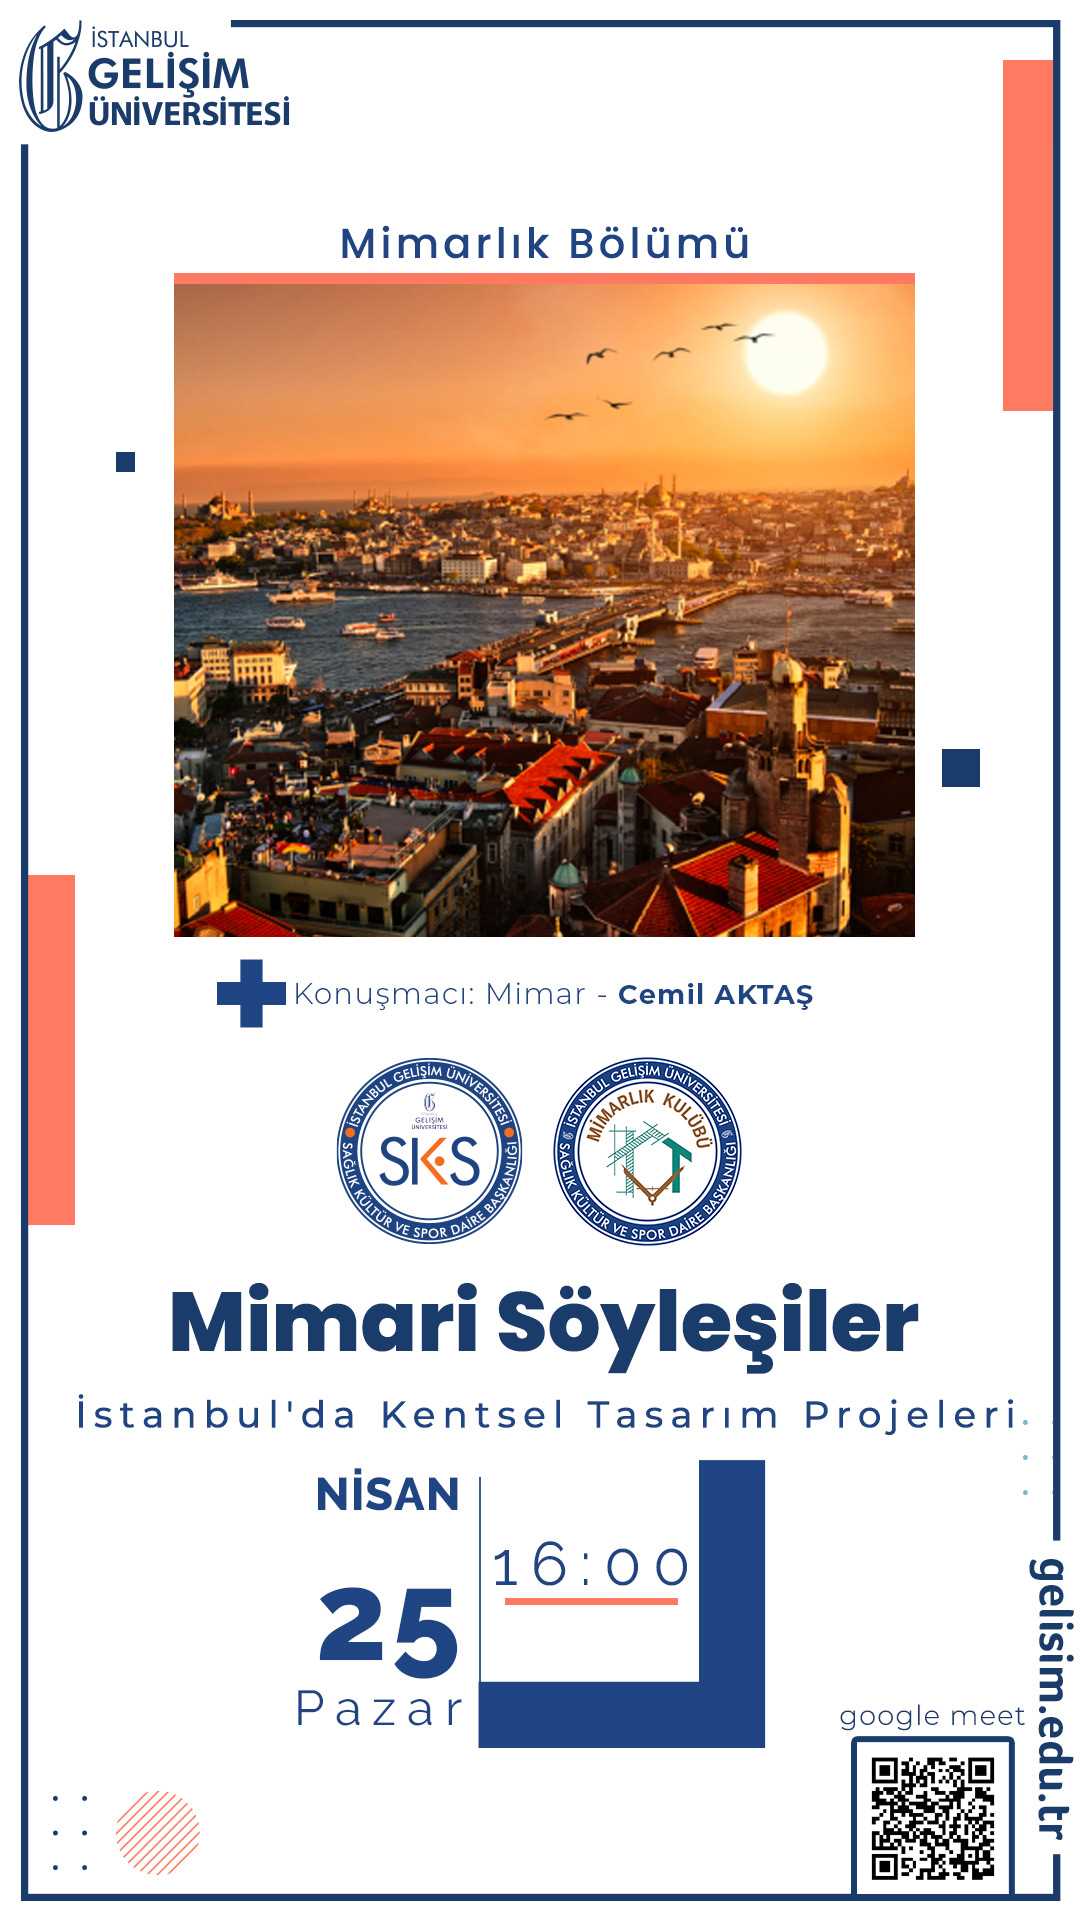 İstanbul'da Kentsel Tasarım Projeleri - Mimari Söyleşiler